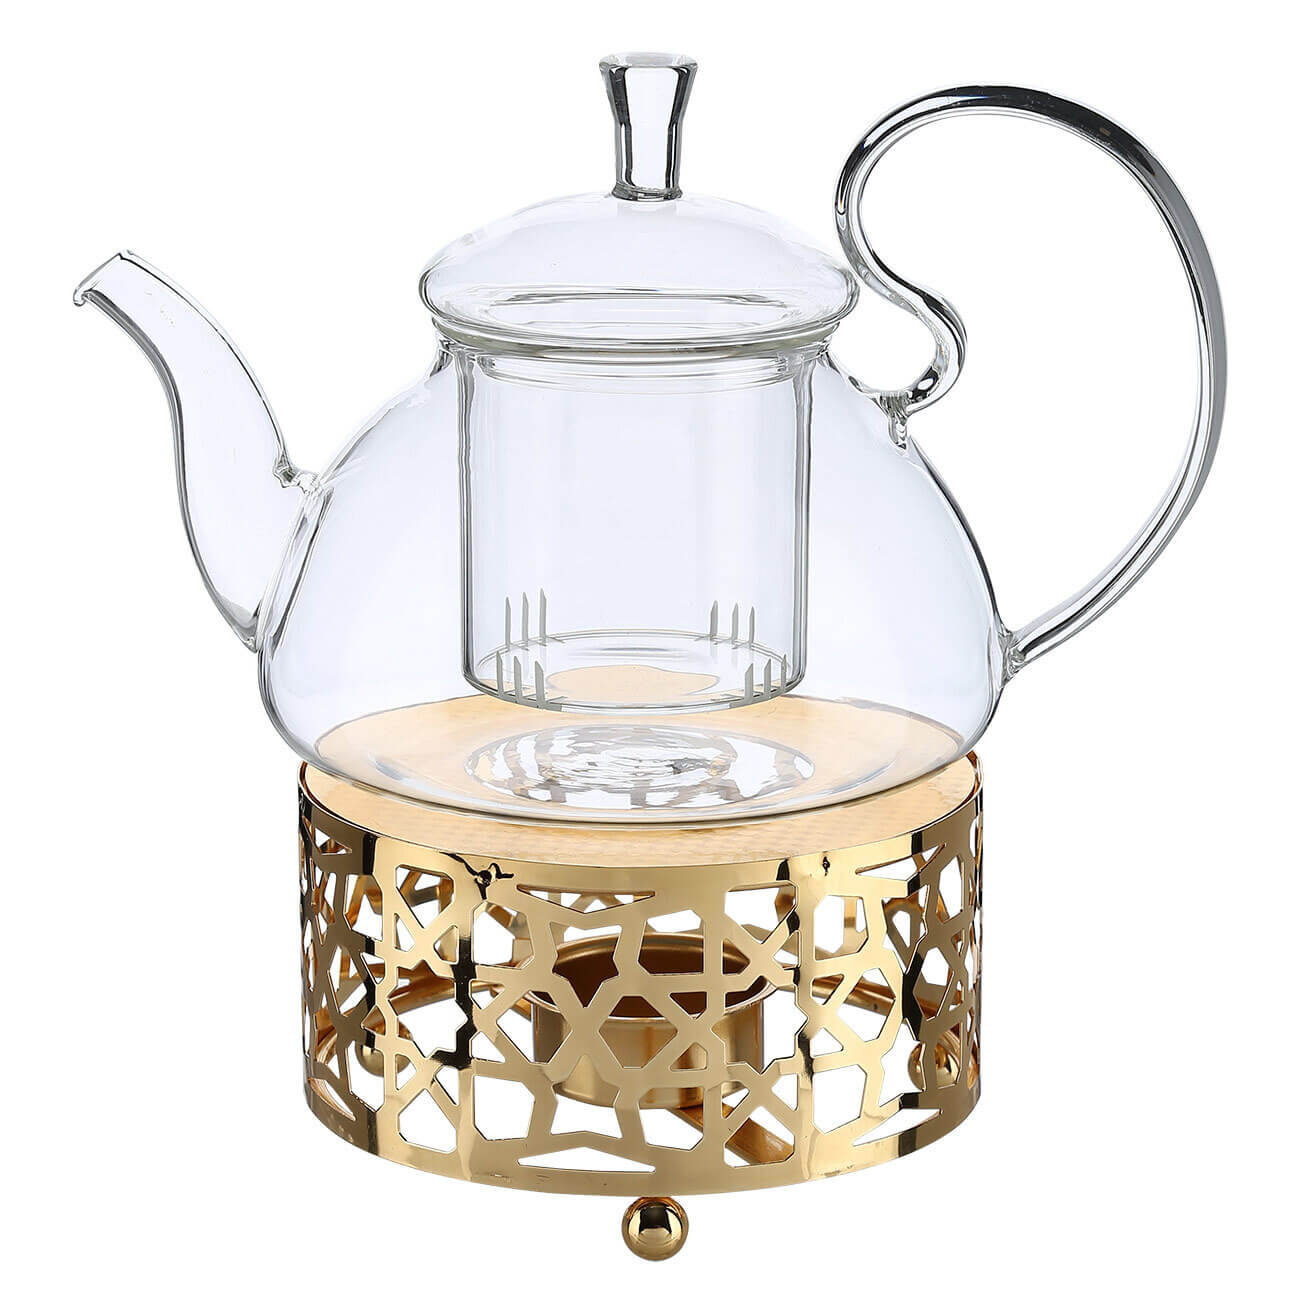 Чайник заварочный, 800 мл, с подогревом, стекло Б/металл, золотистый, Ellan kuchenland чайник заварочный 650 мл на подставке стекло б пробка clear